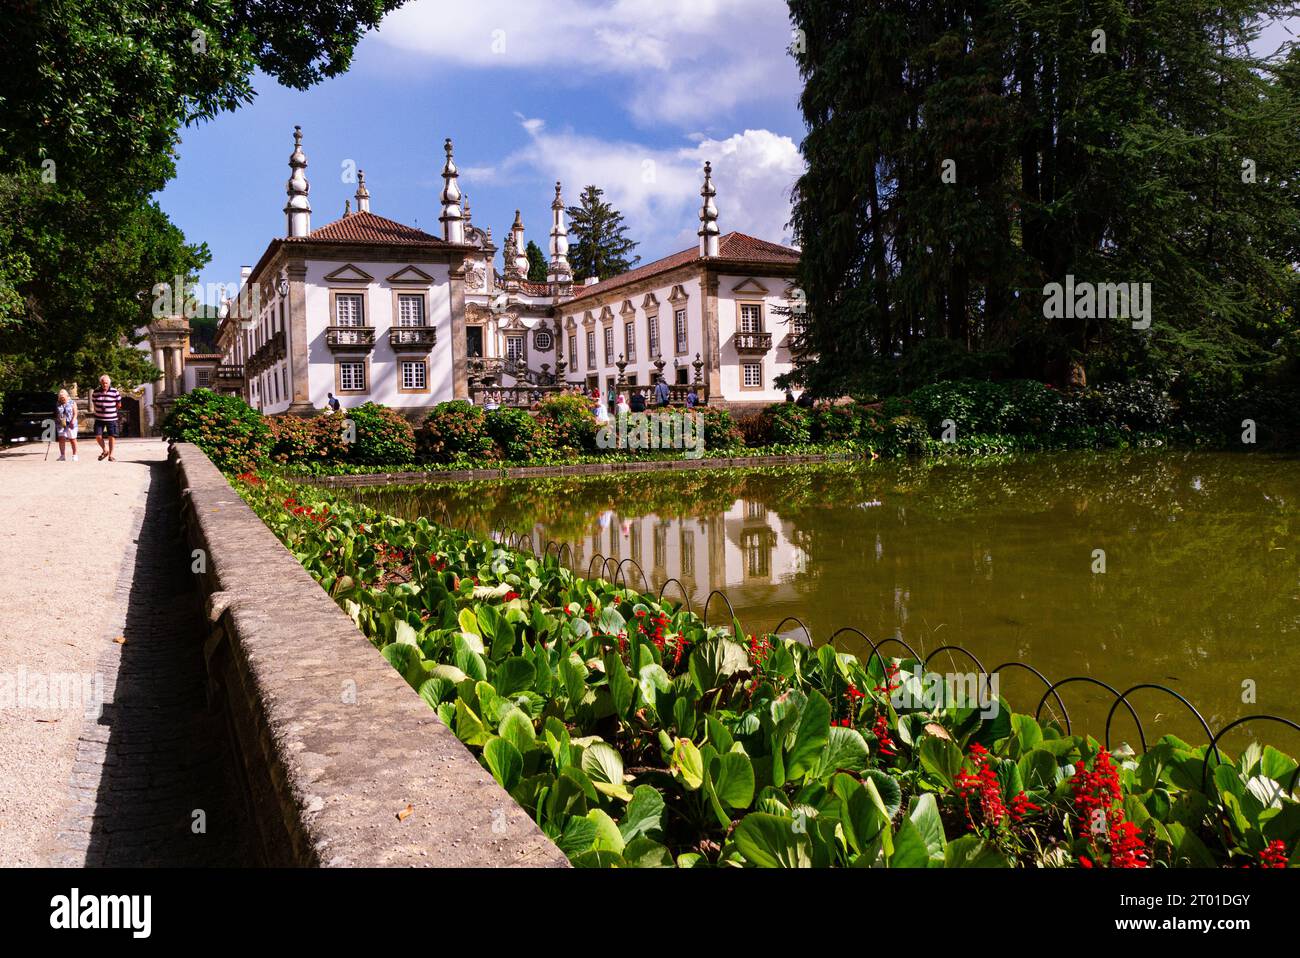 Casa de Mateus Vila Real Portugal EU glorioso esempio di architettura barocca del XVIII secolo con meravigliosi giardini formali raffigurati sul vino rosa Mateus Foto Stock